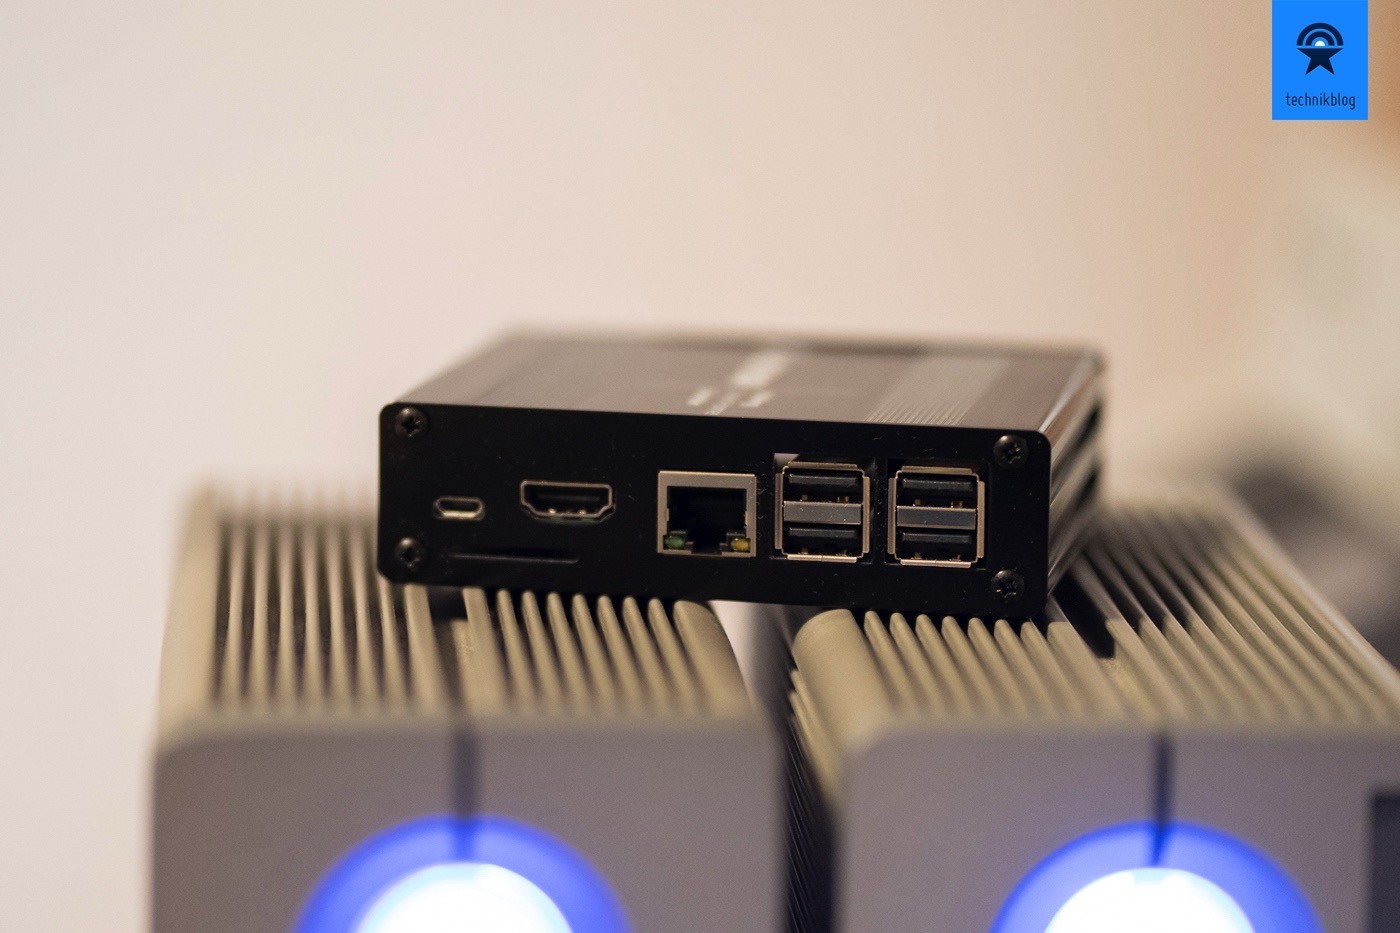 Voxior Anschlüsse - gebraucht werden nur Ethernet und Micro-USB für Power